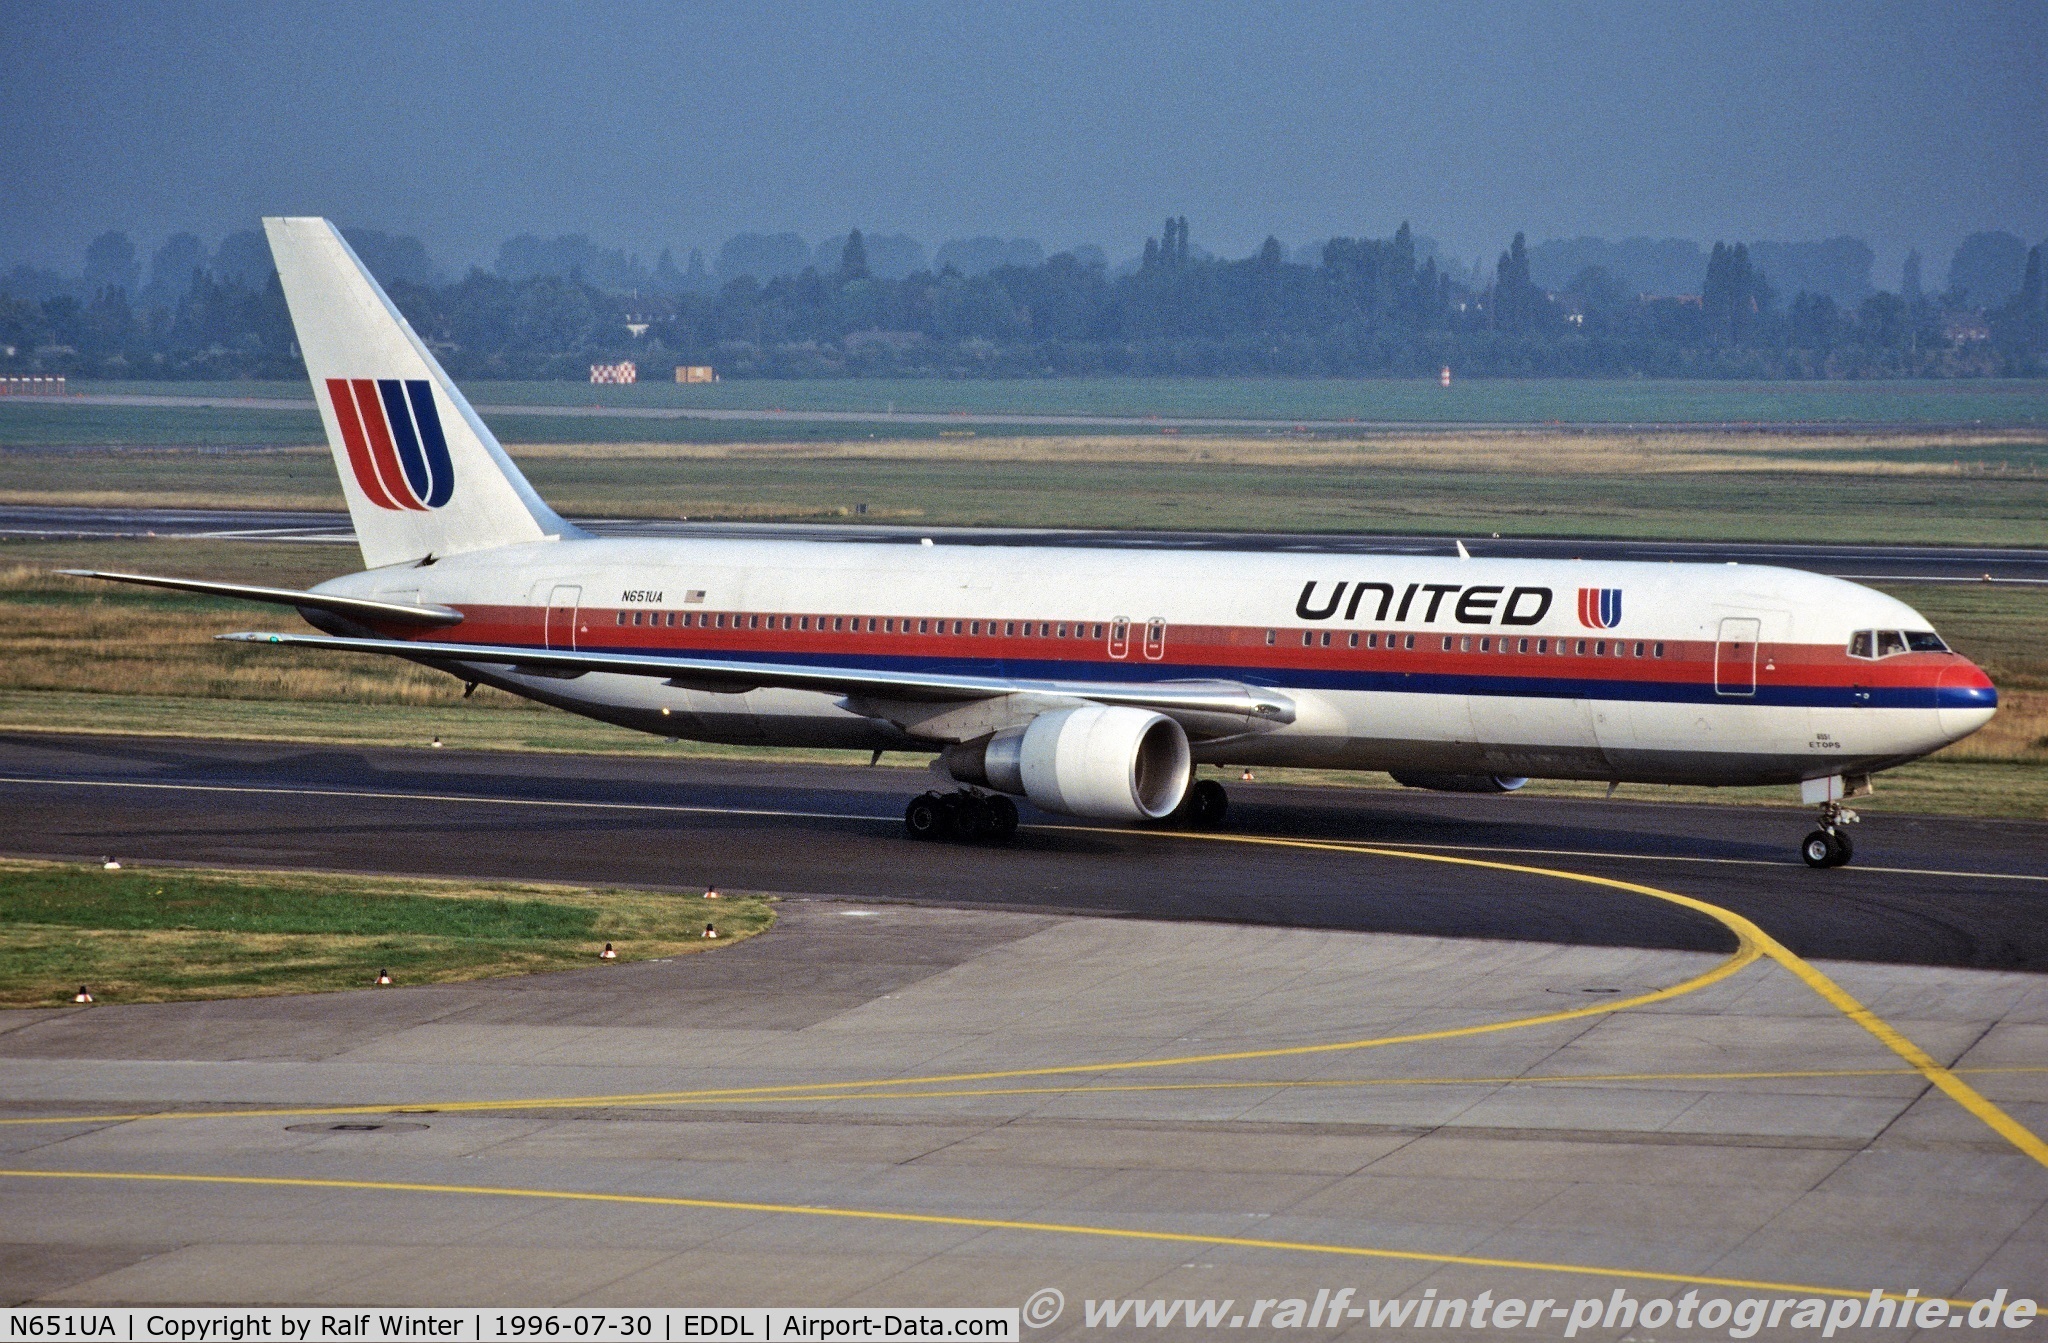 N651UA, 1992 Boeing 767-322 C/N 25389, Boeing 767-322(ER) - United Airlines - 25389 - N651UA - 30.07.1996 - DUS